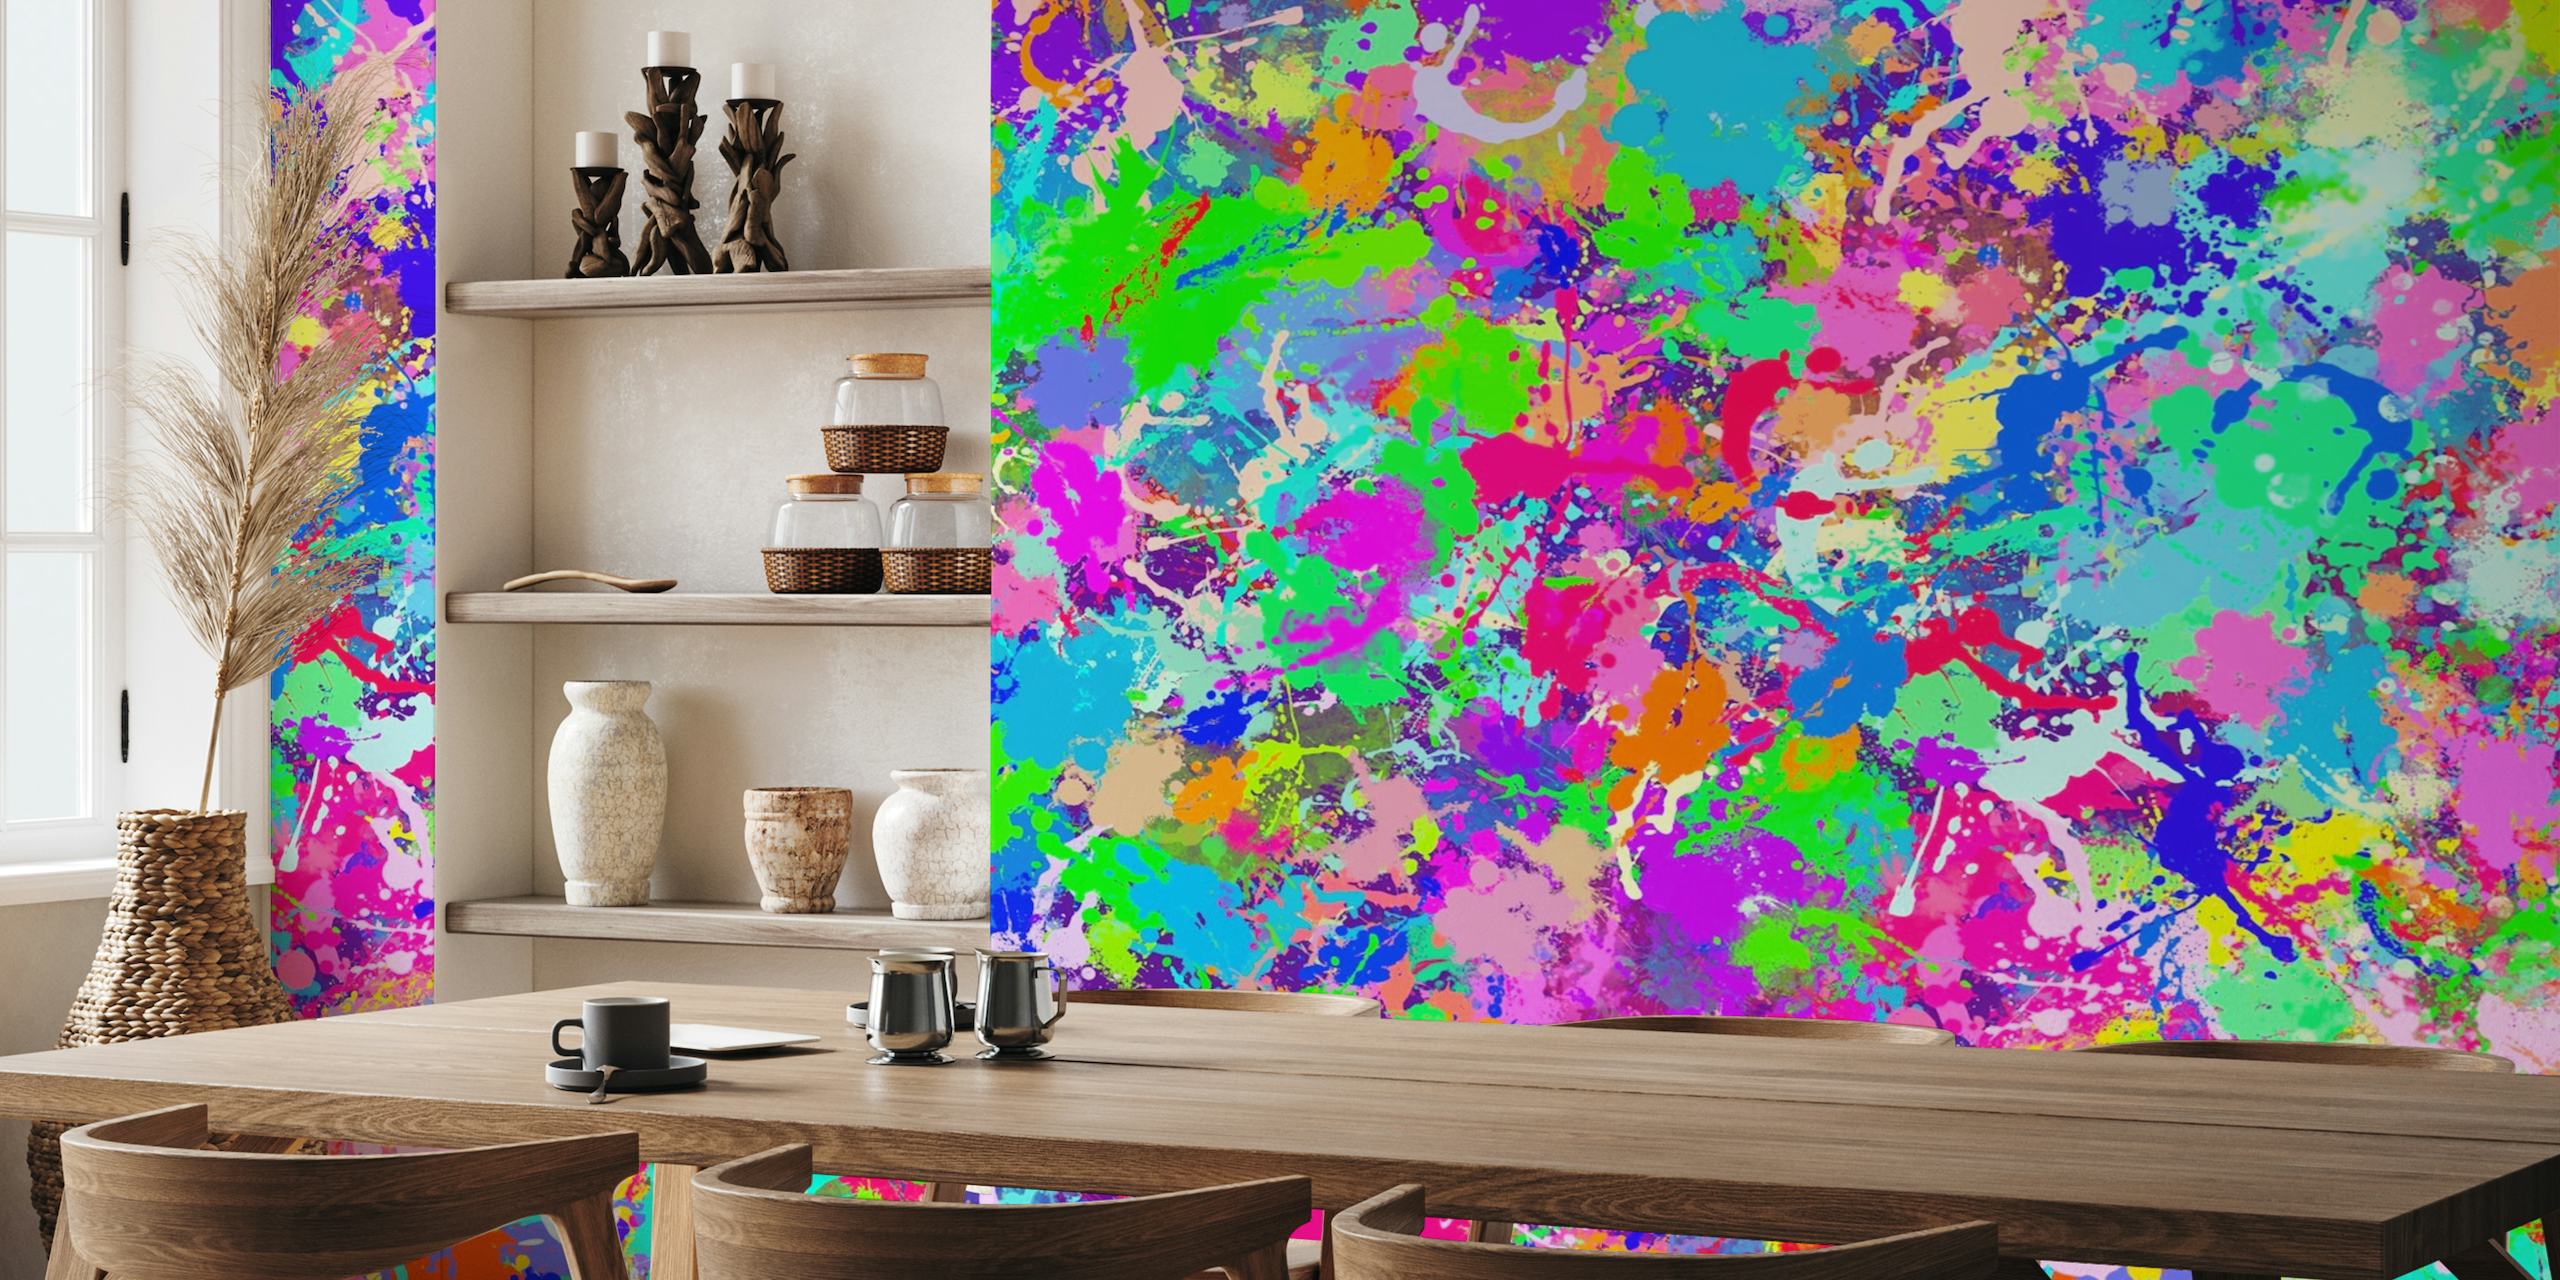 Kolorowa abstrakcyjna fototapeta z plamami farby w żywych odcieniach różu, błękitu, zieleni i żółci